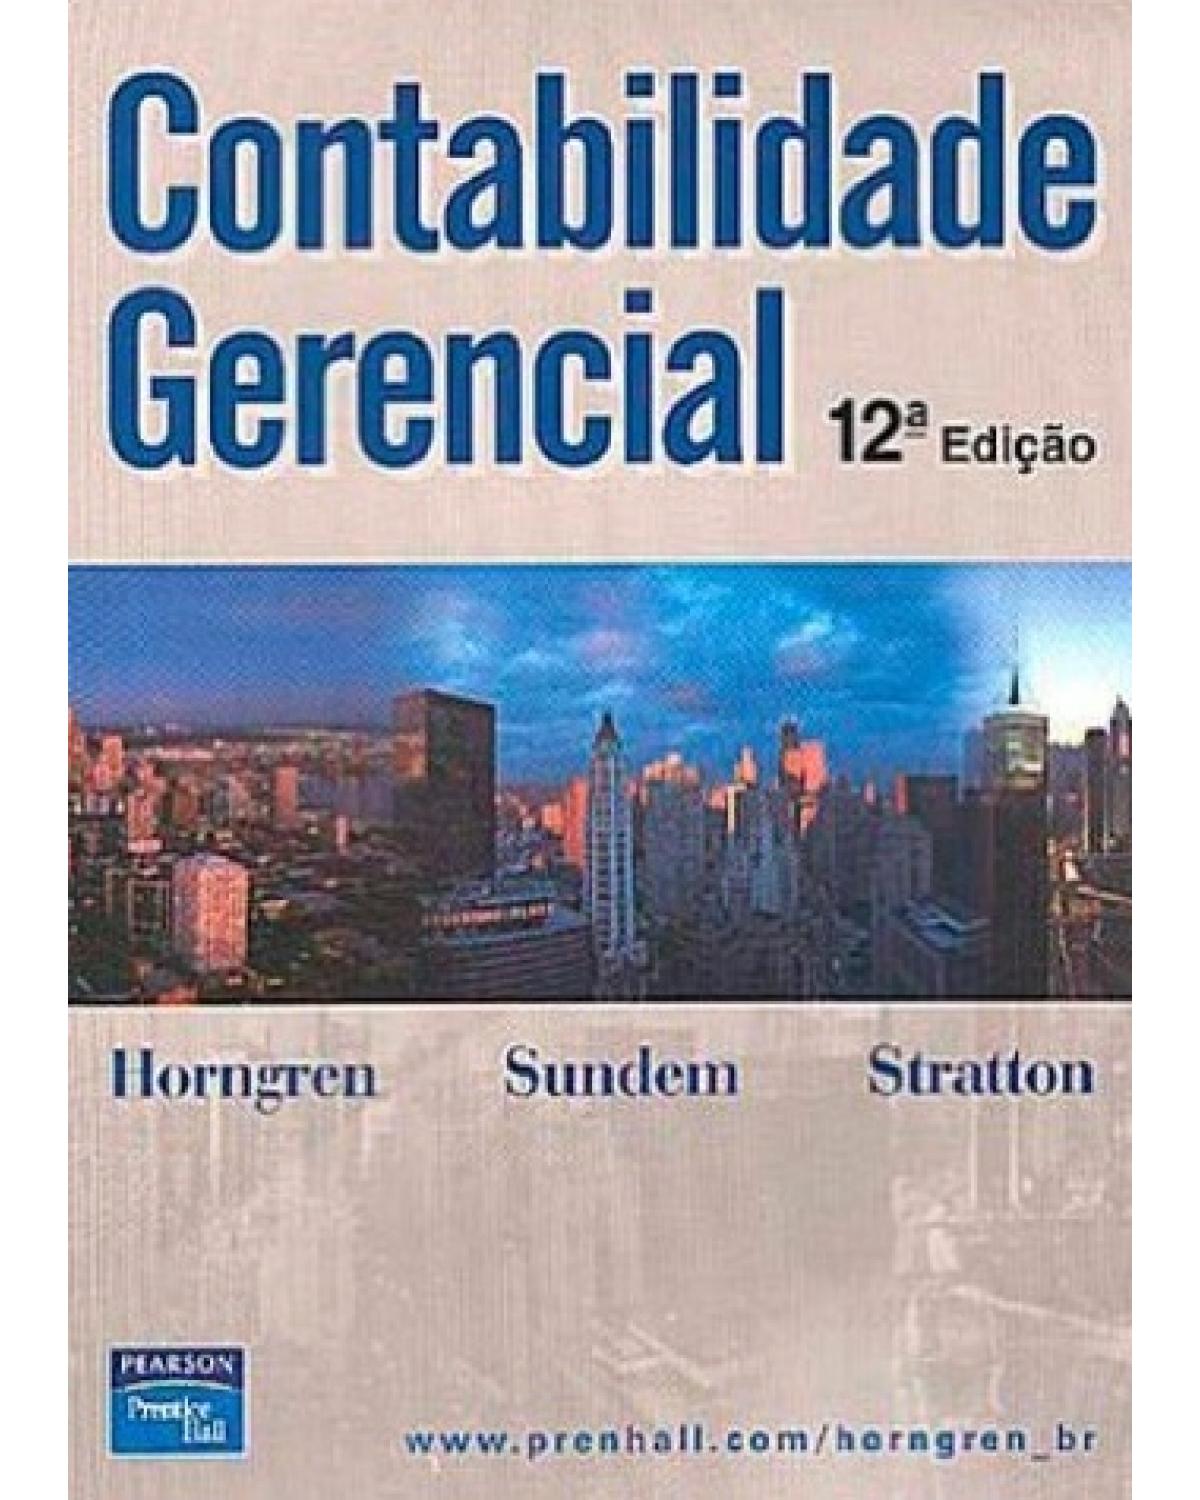 Contabilidade gerencial - 12ª Edição | 2003